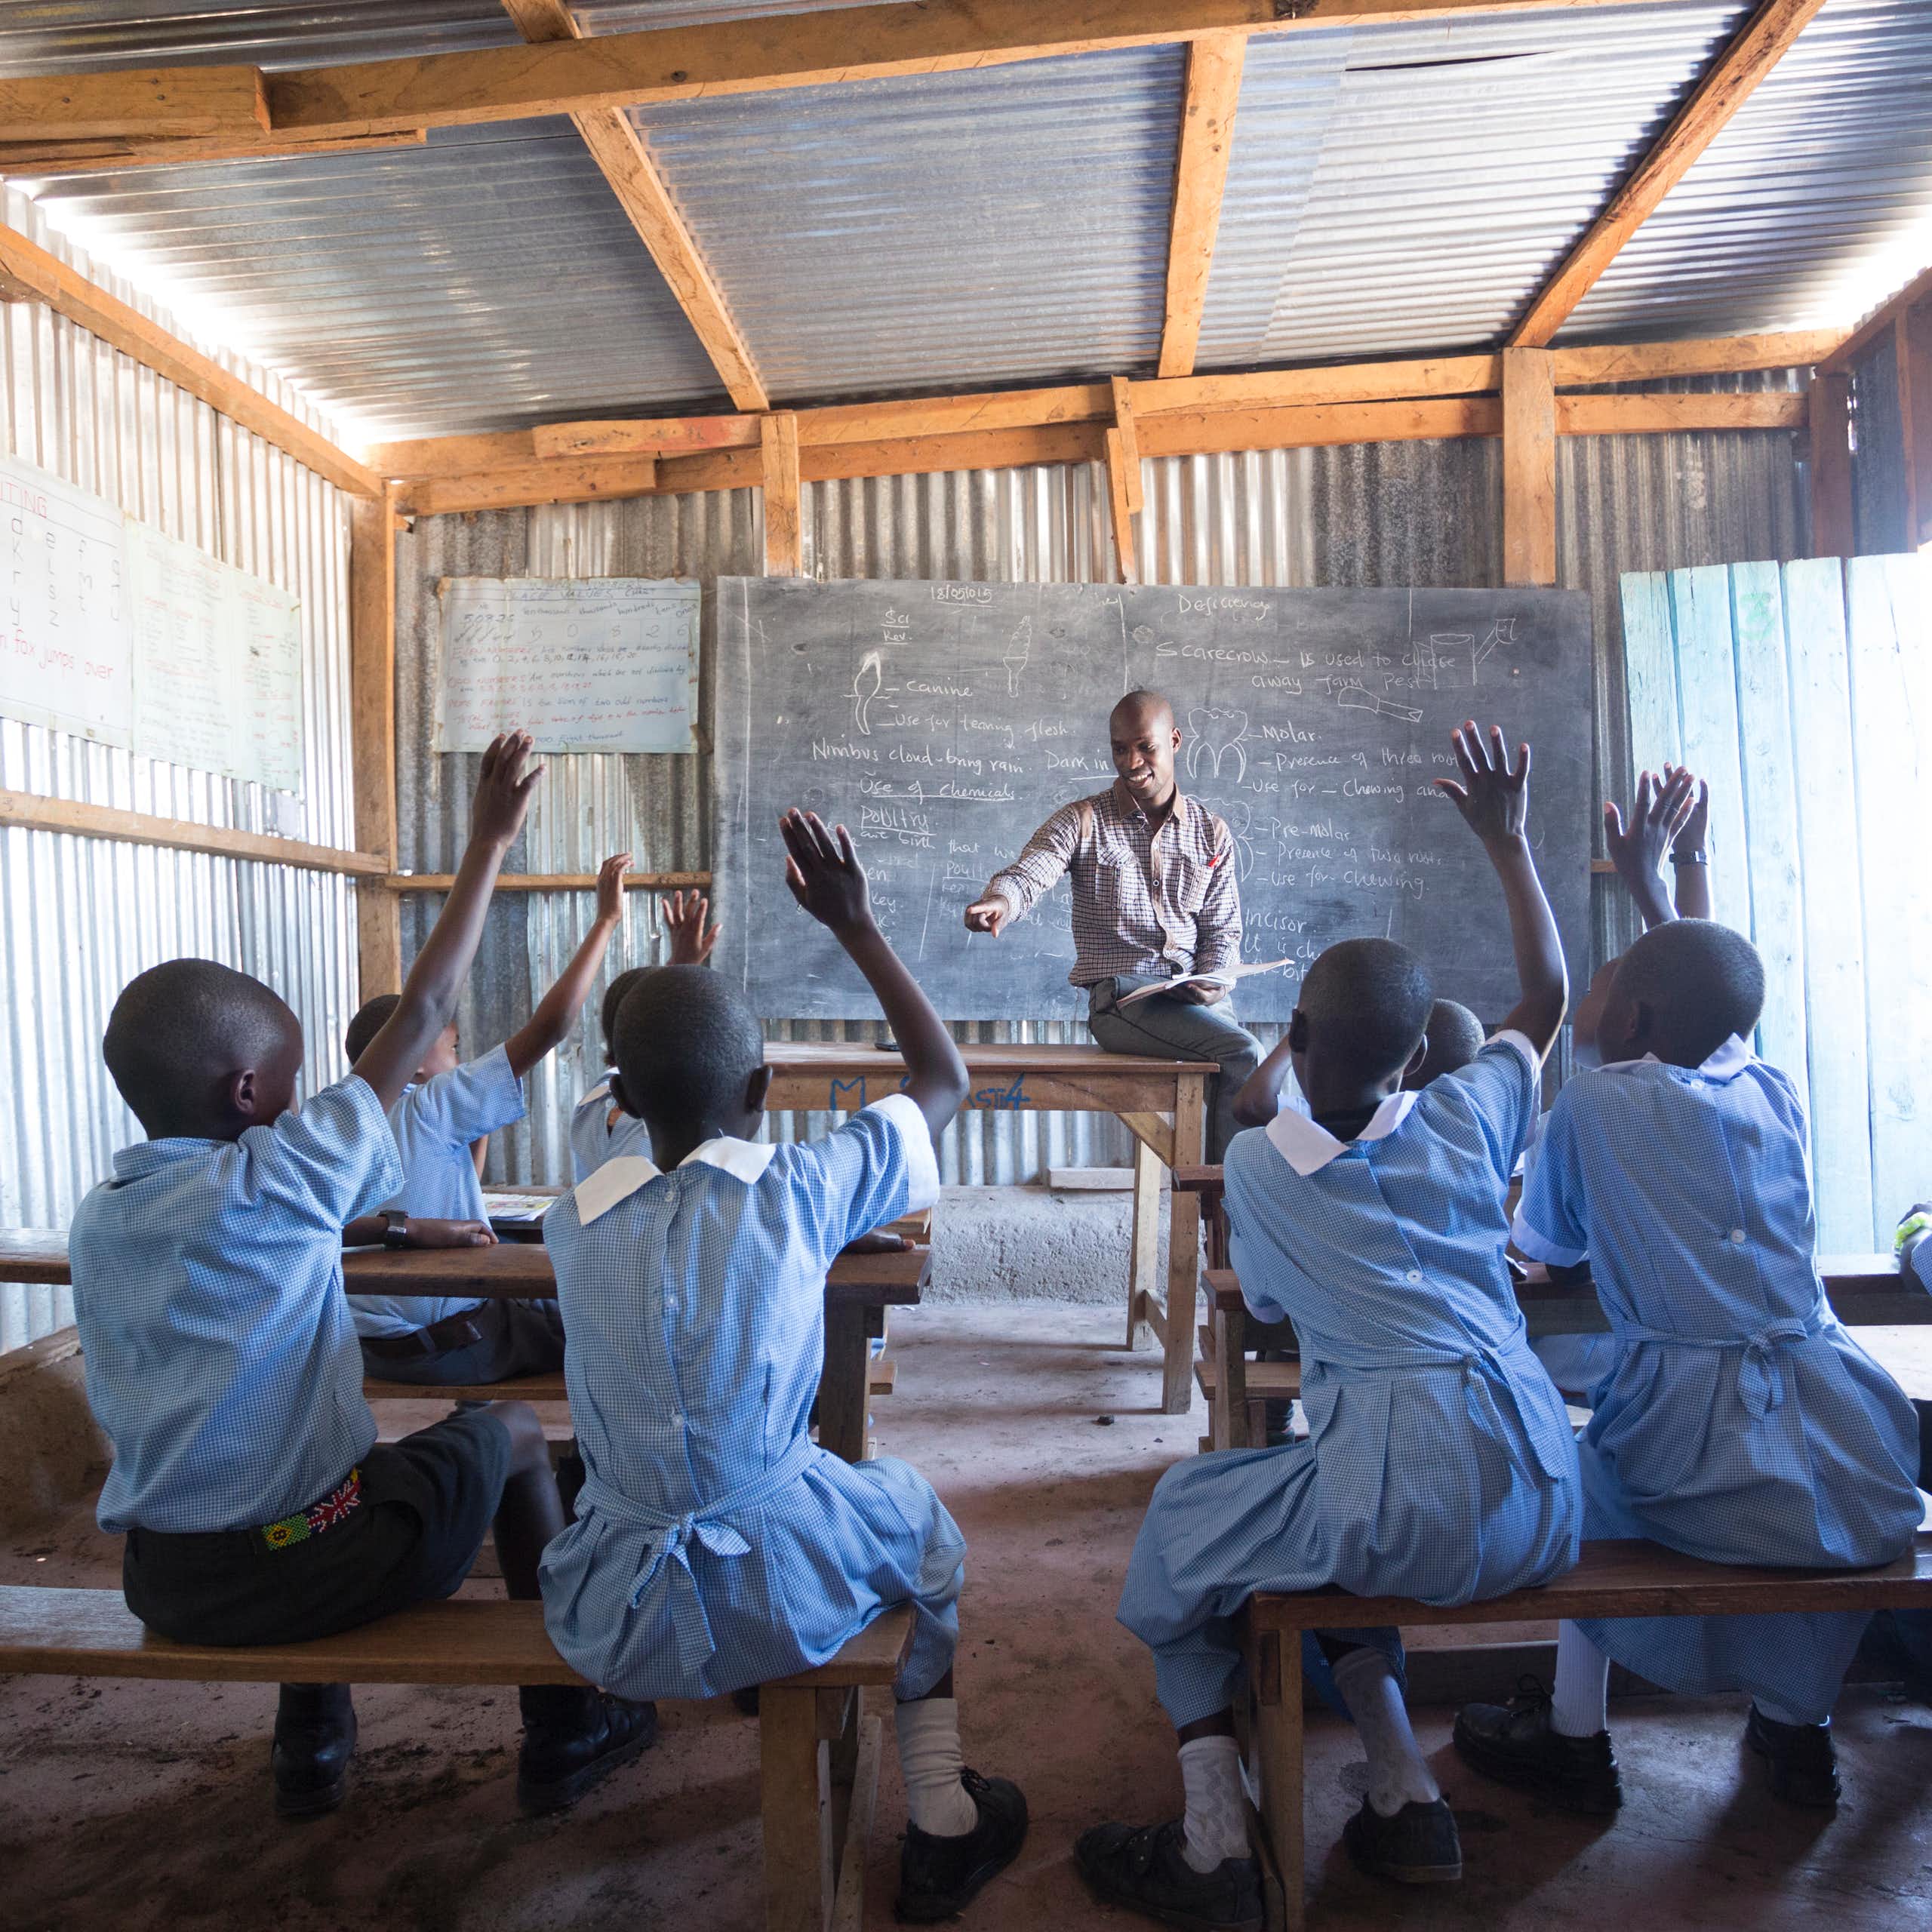 Un pequeño grupo de escolares con uniforme azul claro levantan la mano para dirigirse a un profesor sentado en un pupitre a la cabeza de la clase.